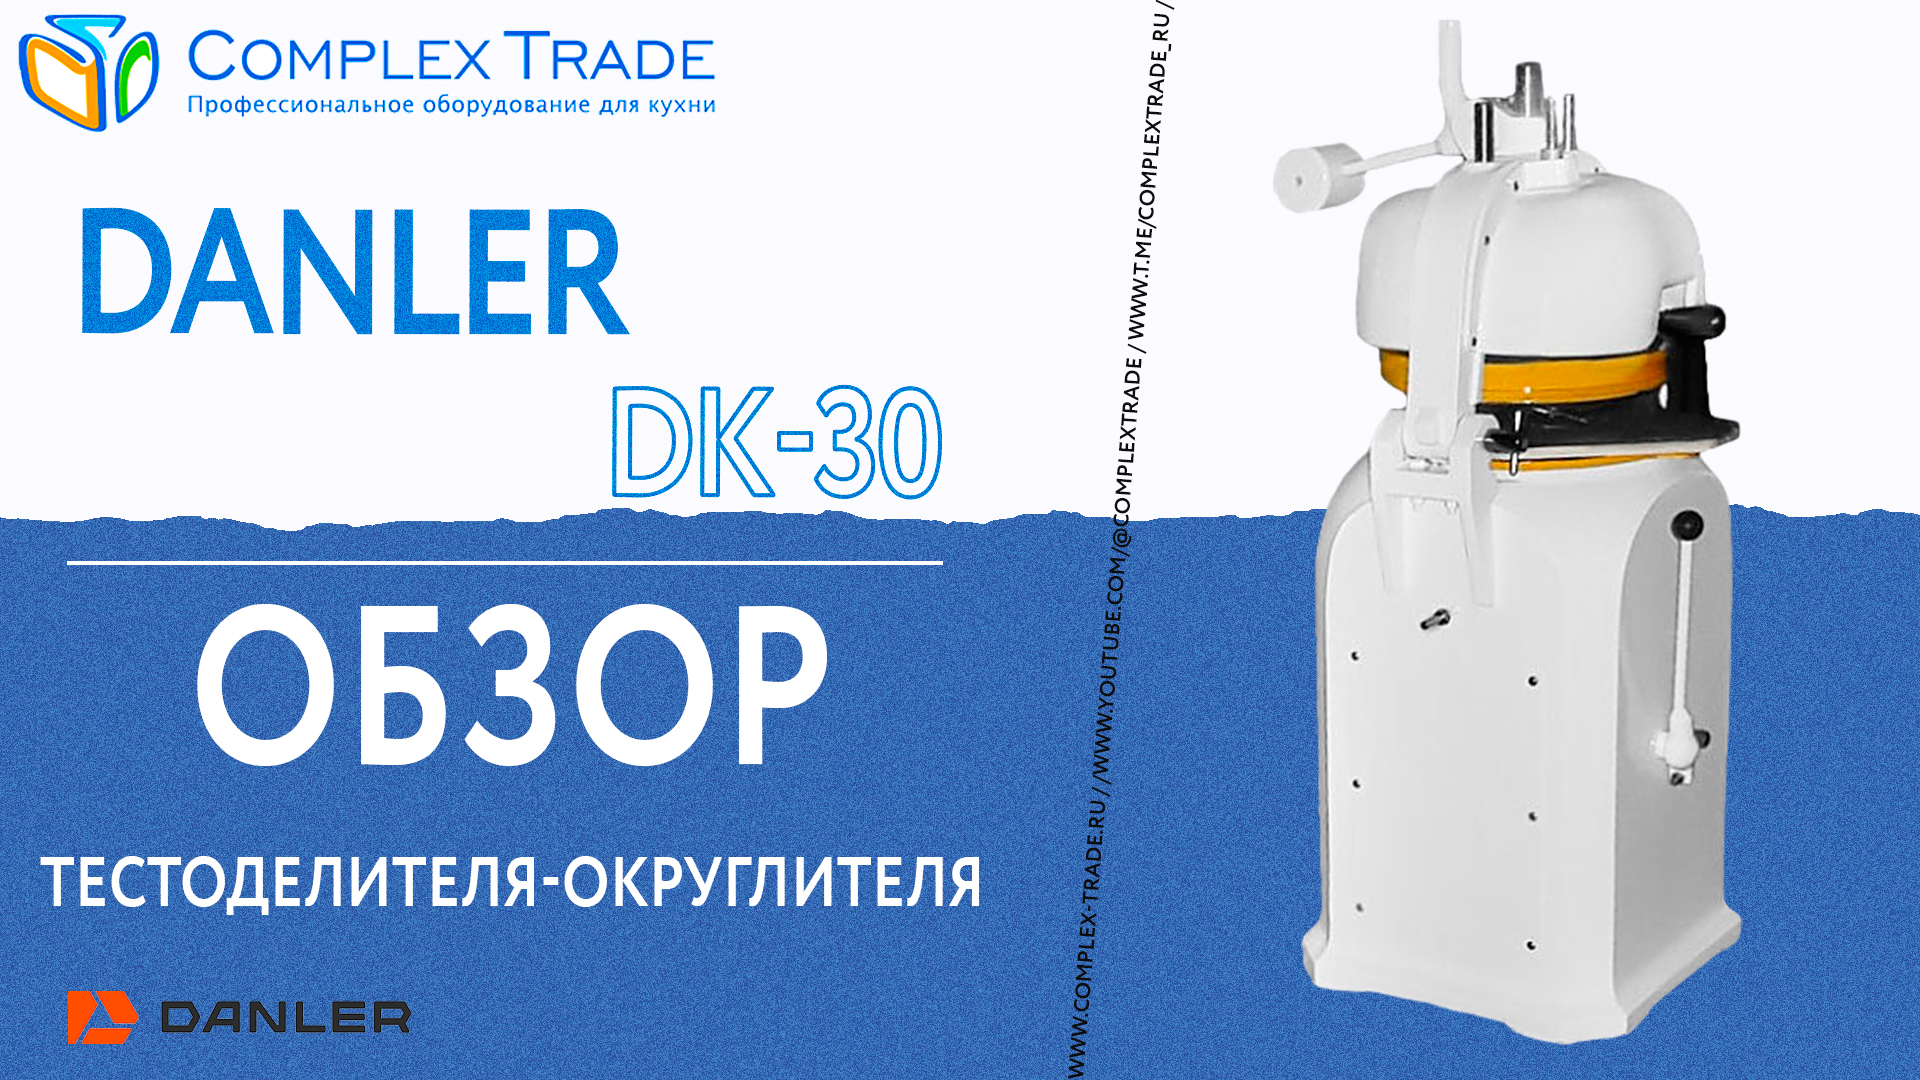 Danler DK-30 - Обзор тестоделителя-округлителя